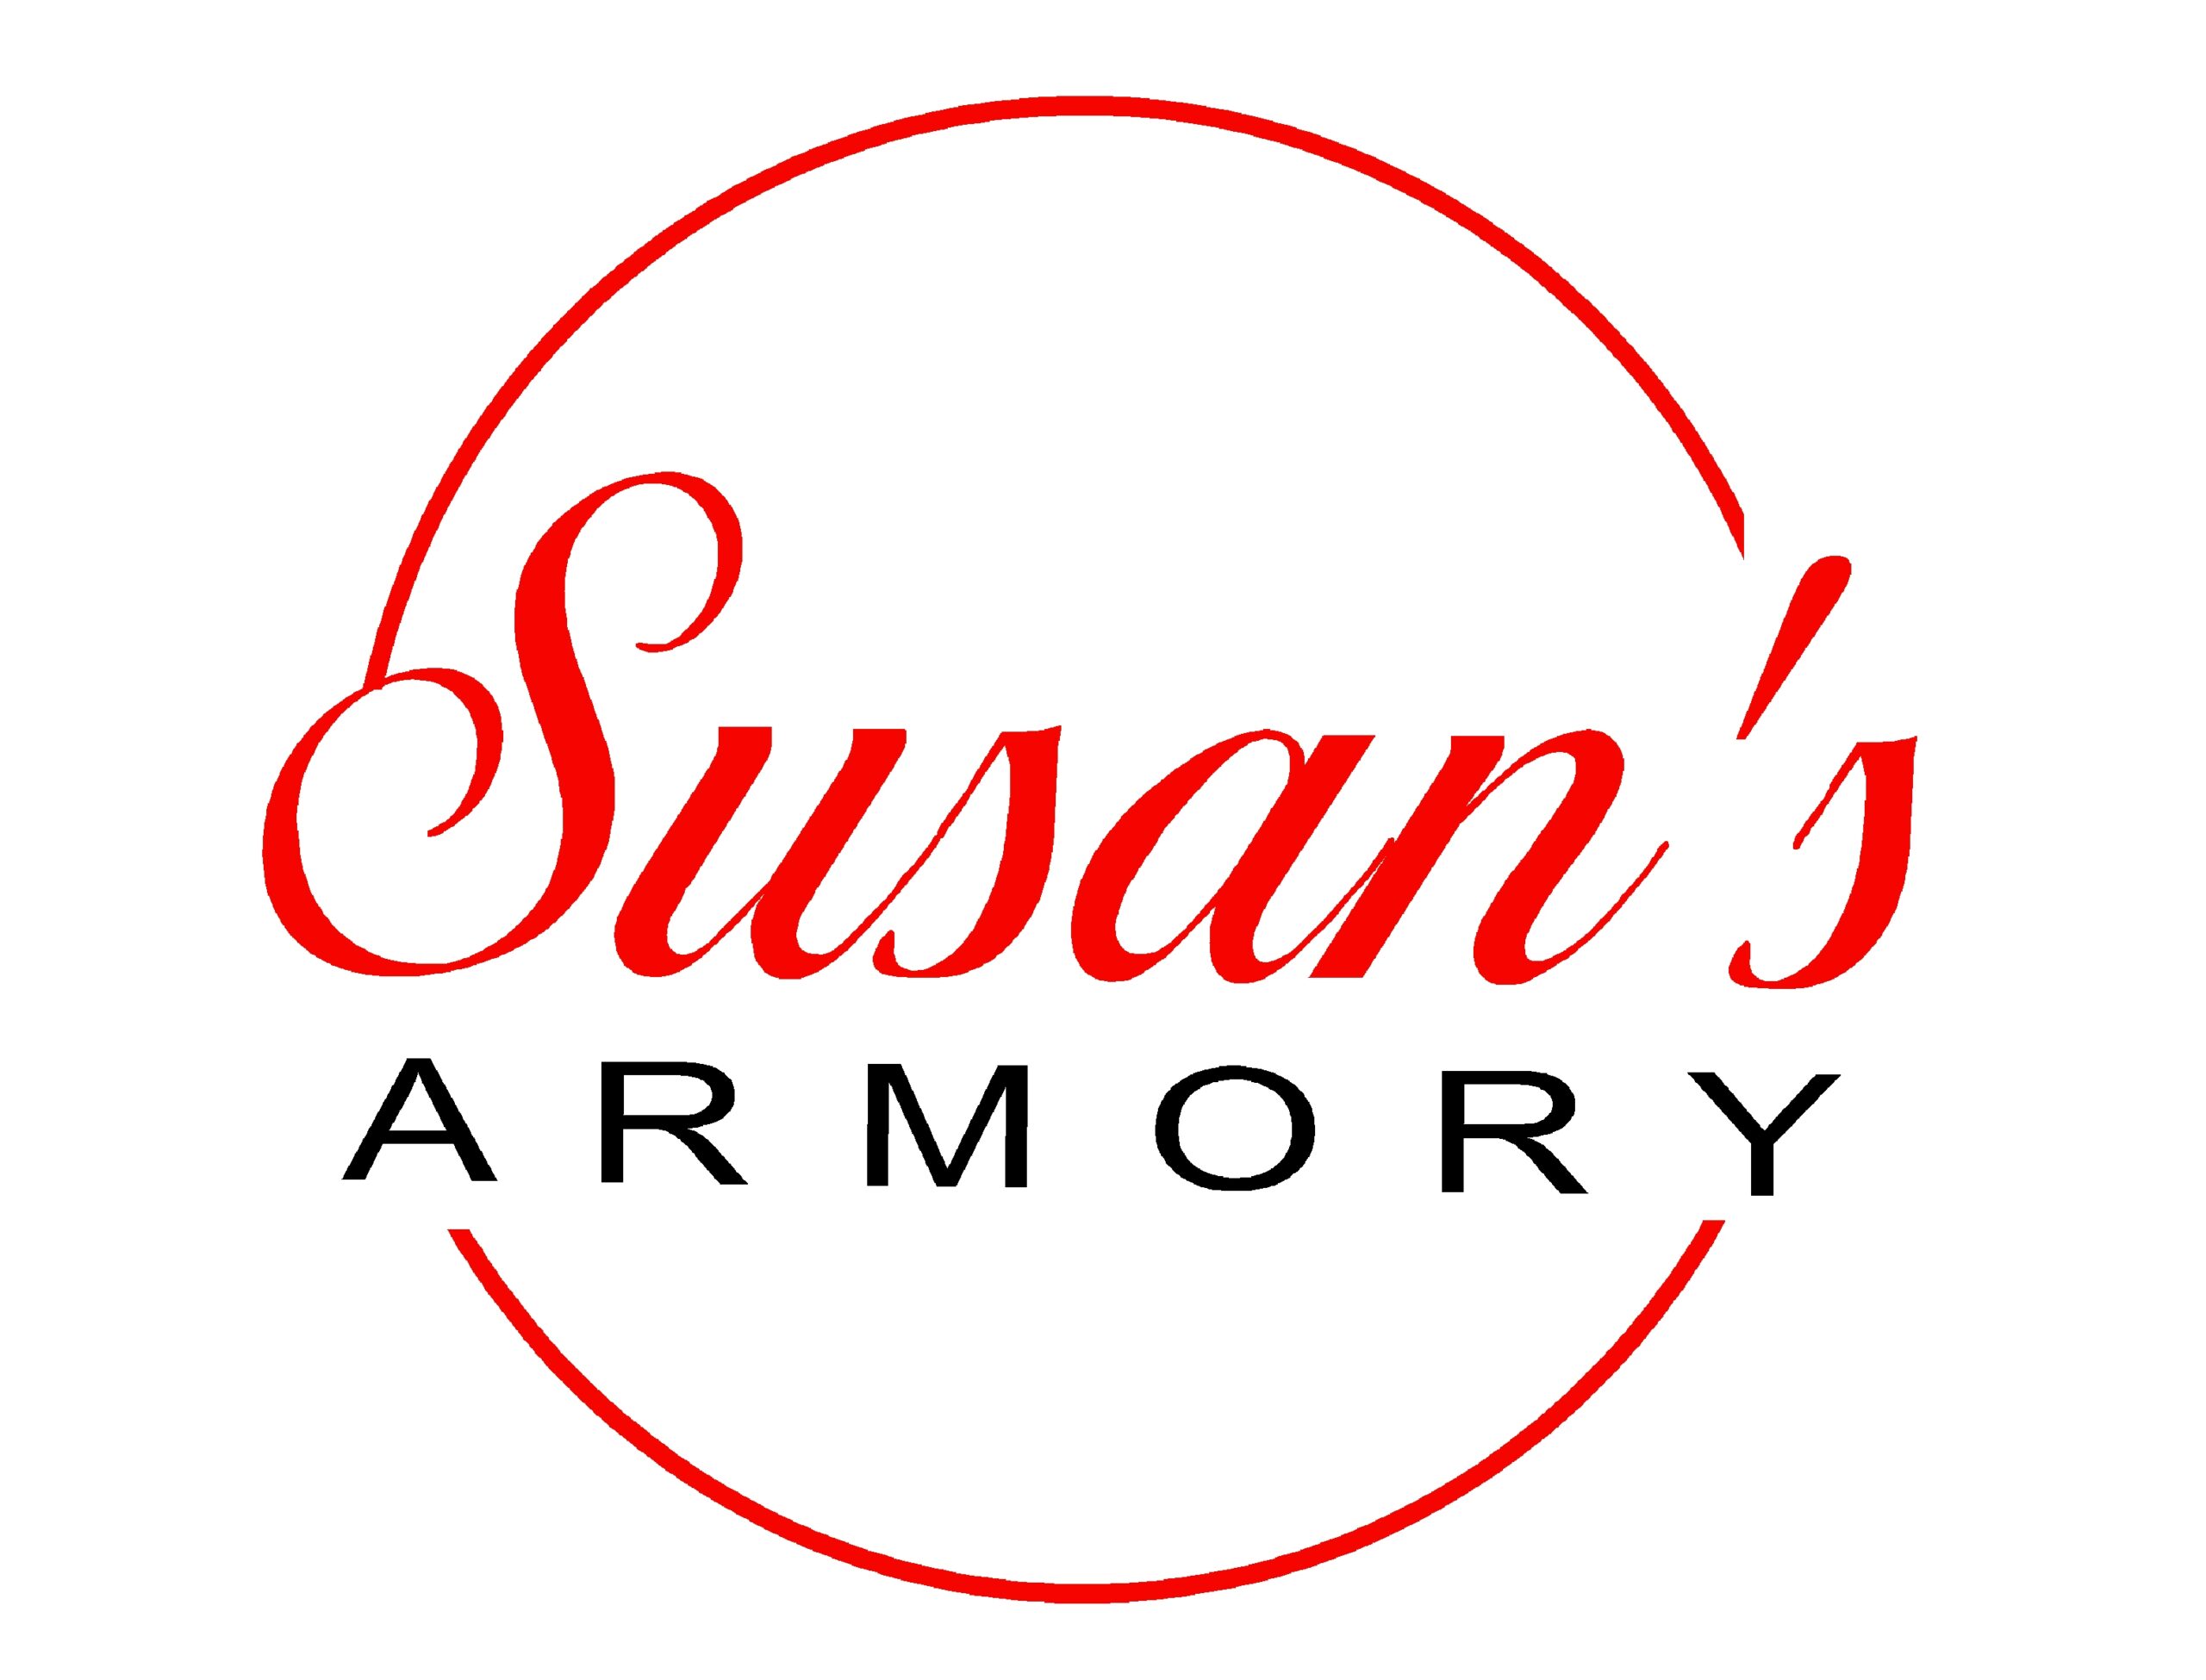 Susans Armory